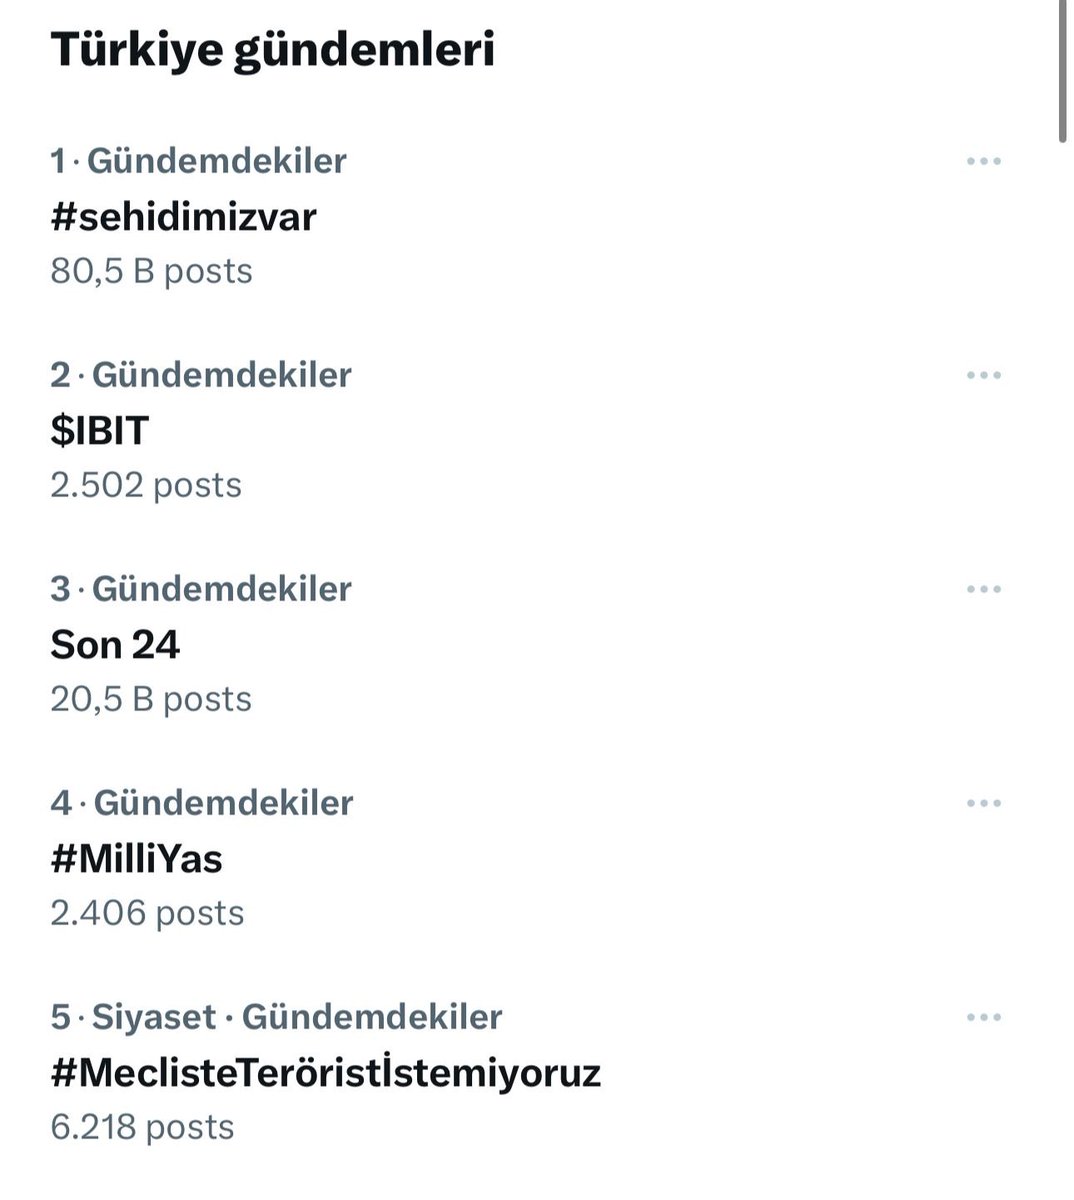 🔴 #MeclisteTeröristİstemiyoruz hashtagi Twitter Türkiye Trend Topic listesine girdi.